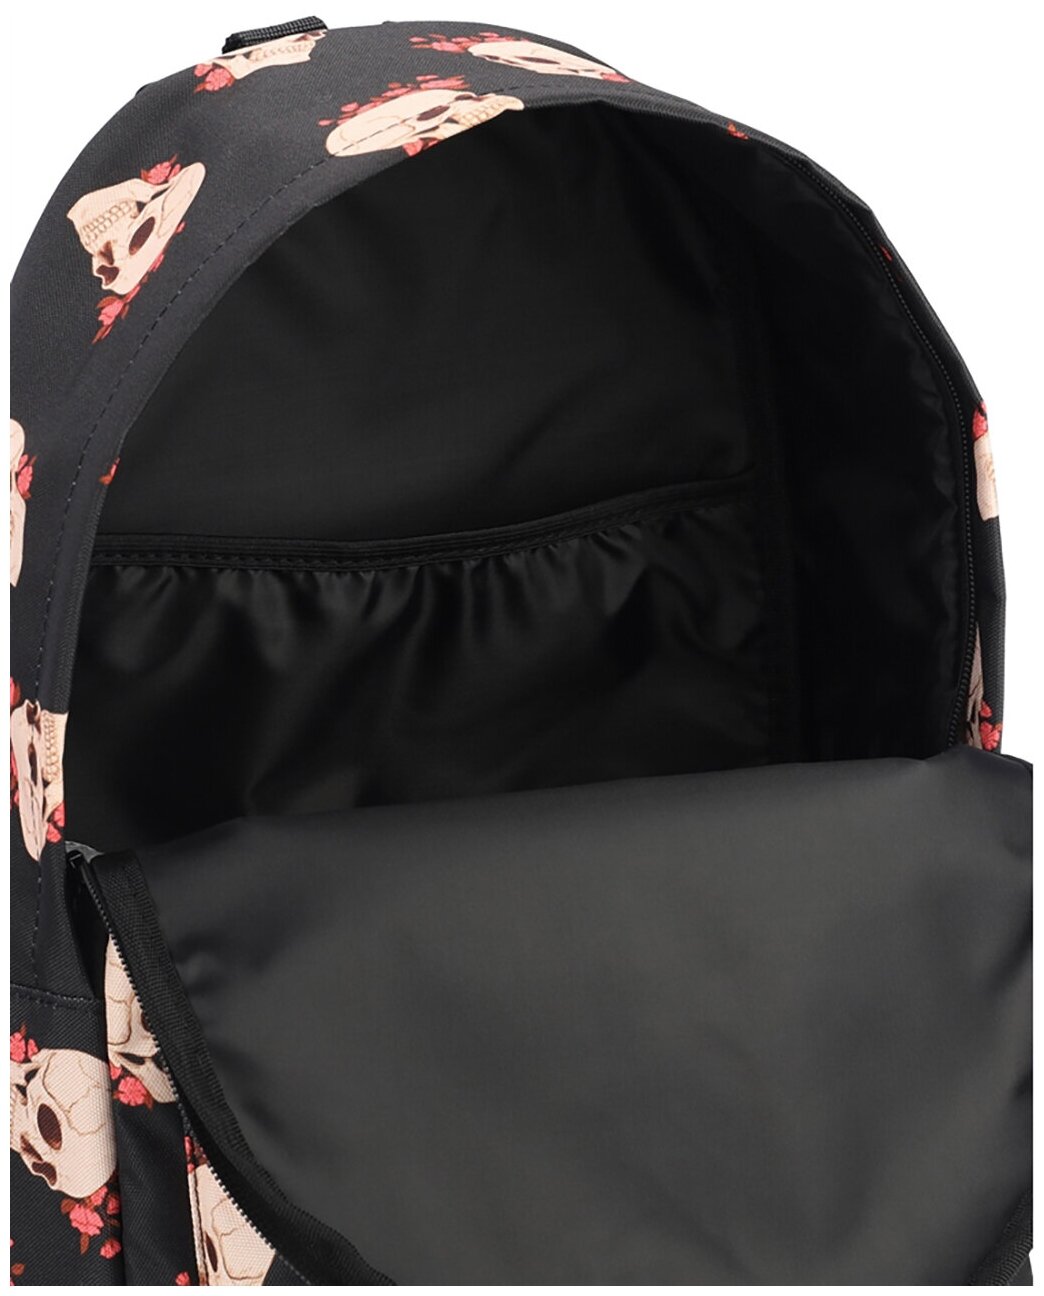 Рюкзак школьный для девочки, женский спортивный городской туристический для путешествий модный, "Череп"